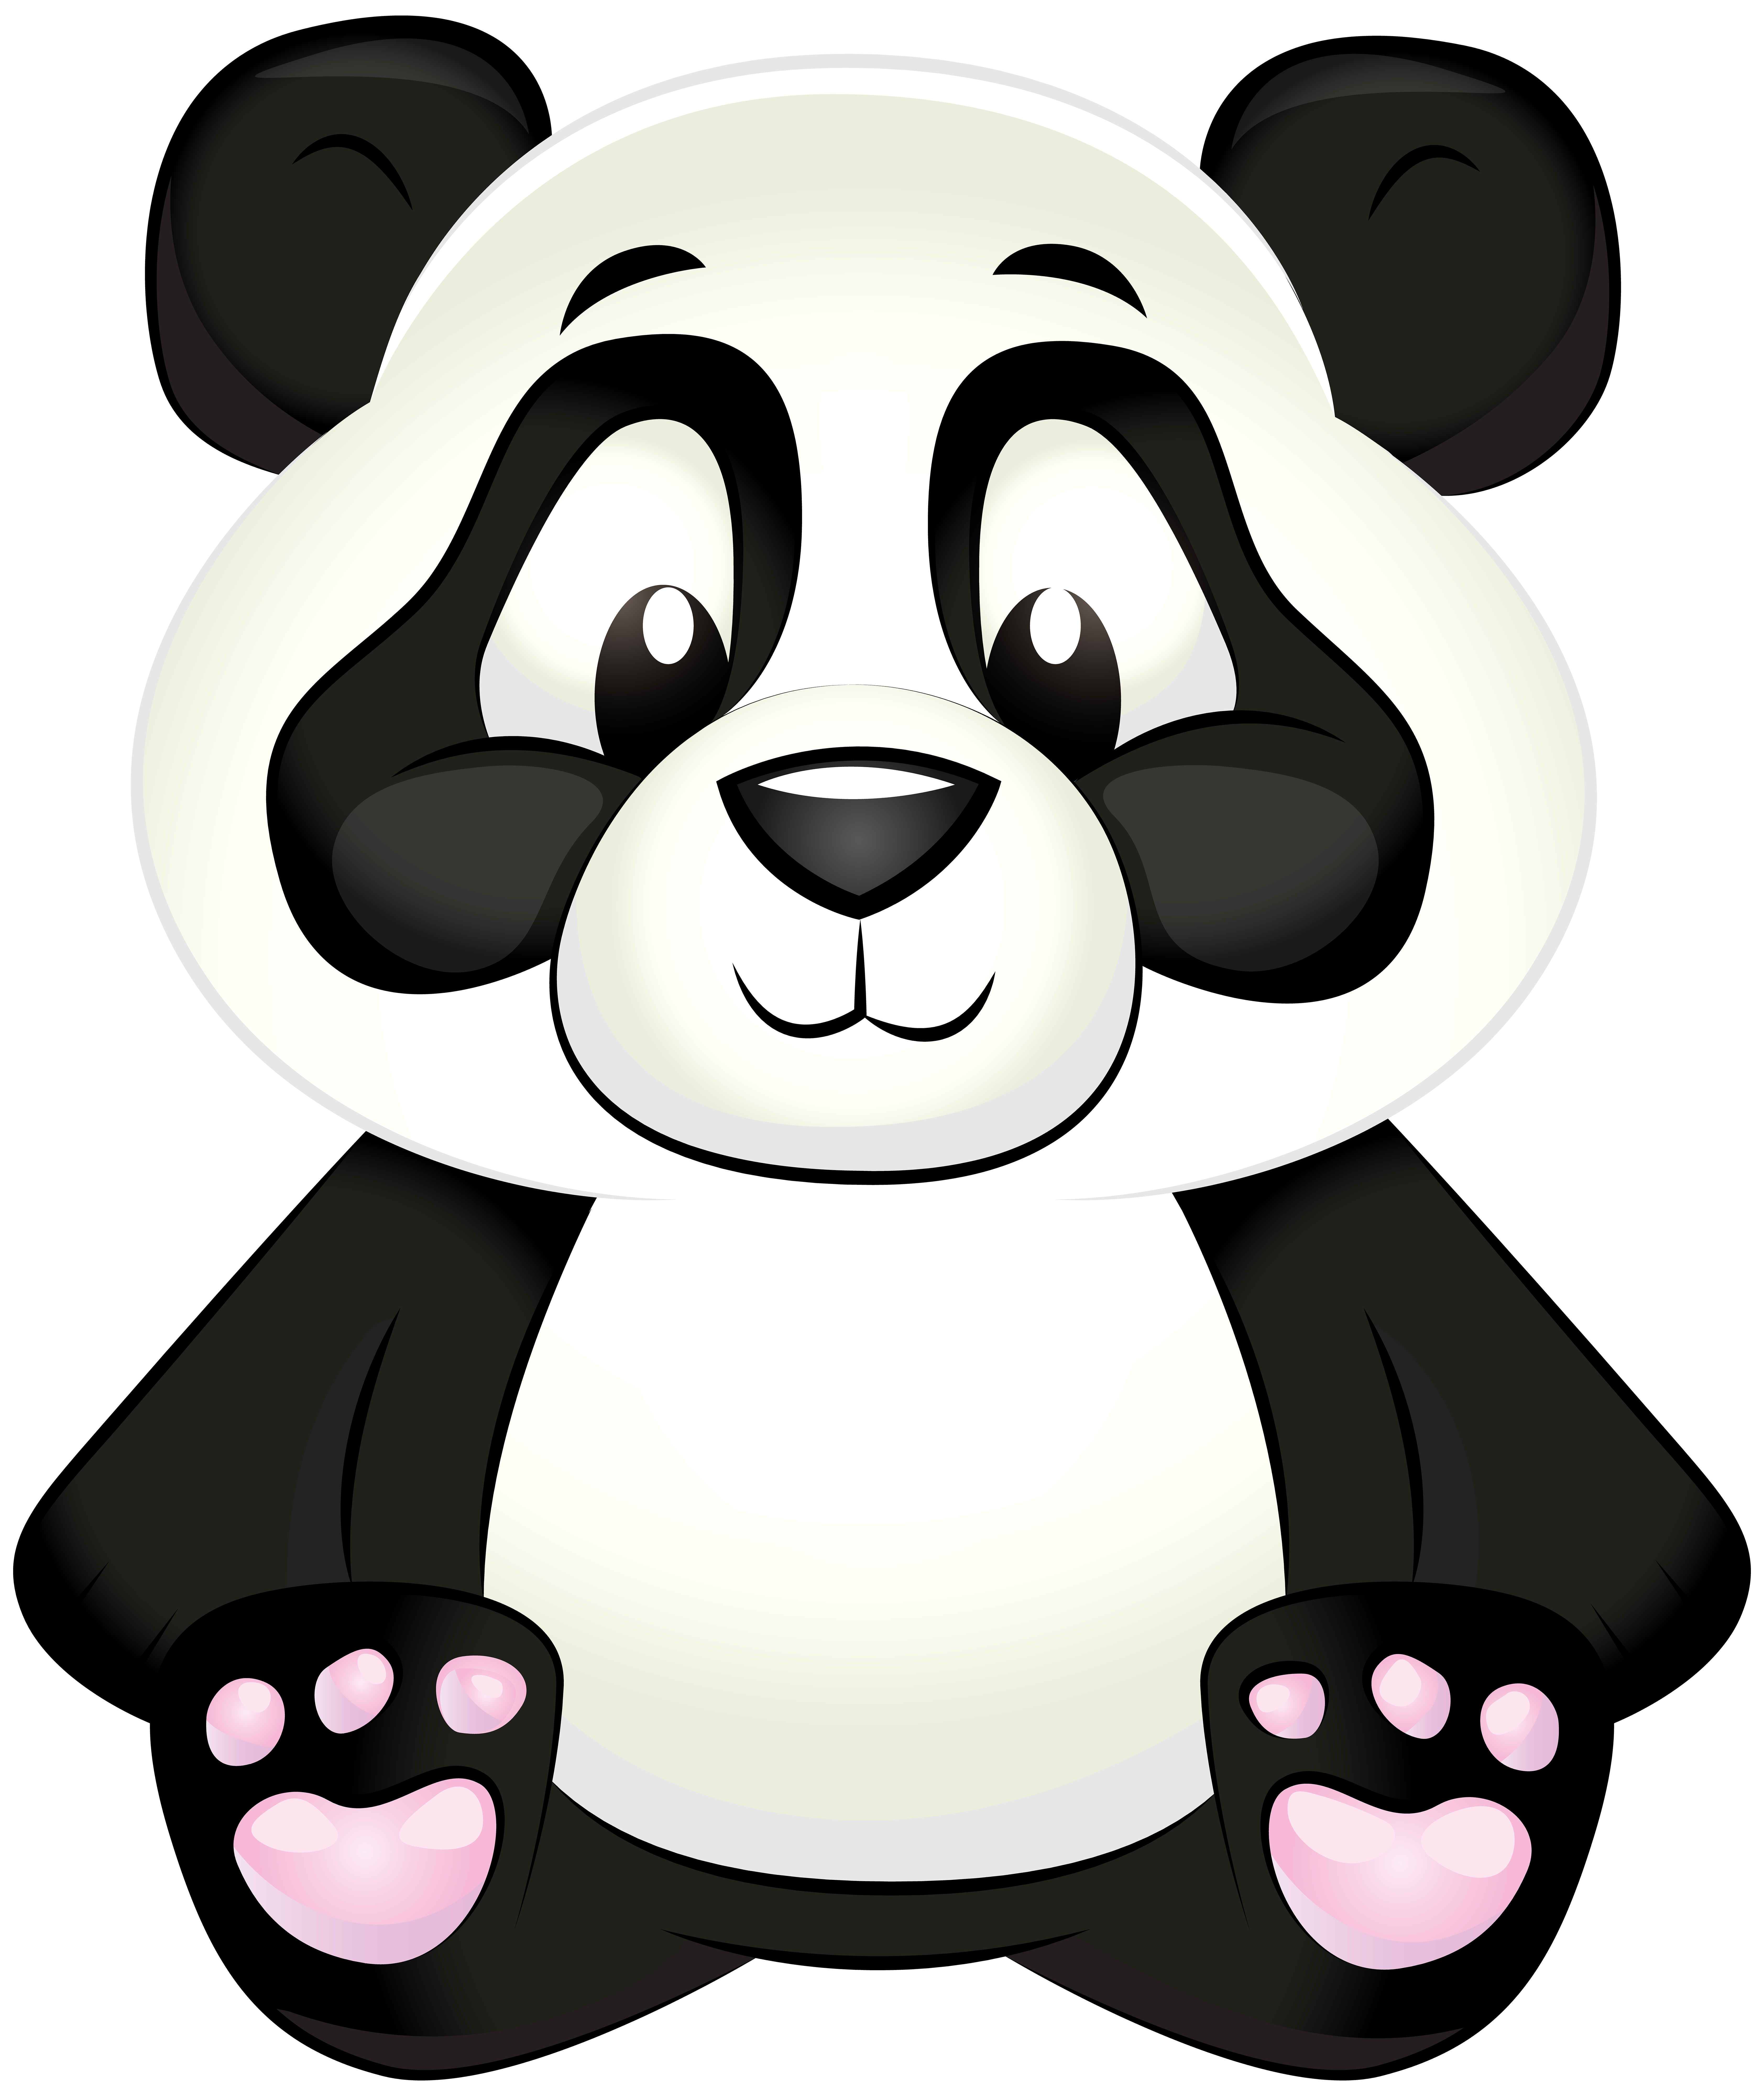 Giant panda Bear Clip art